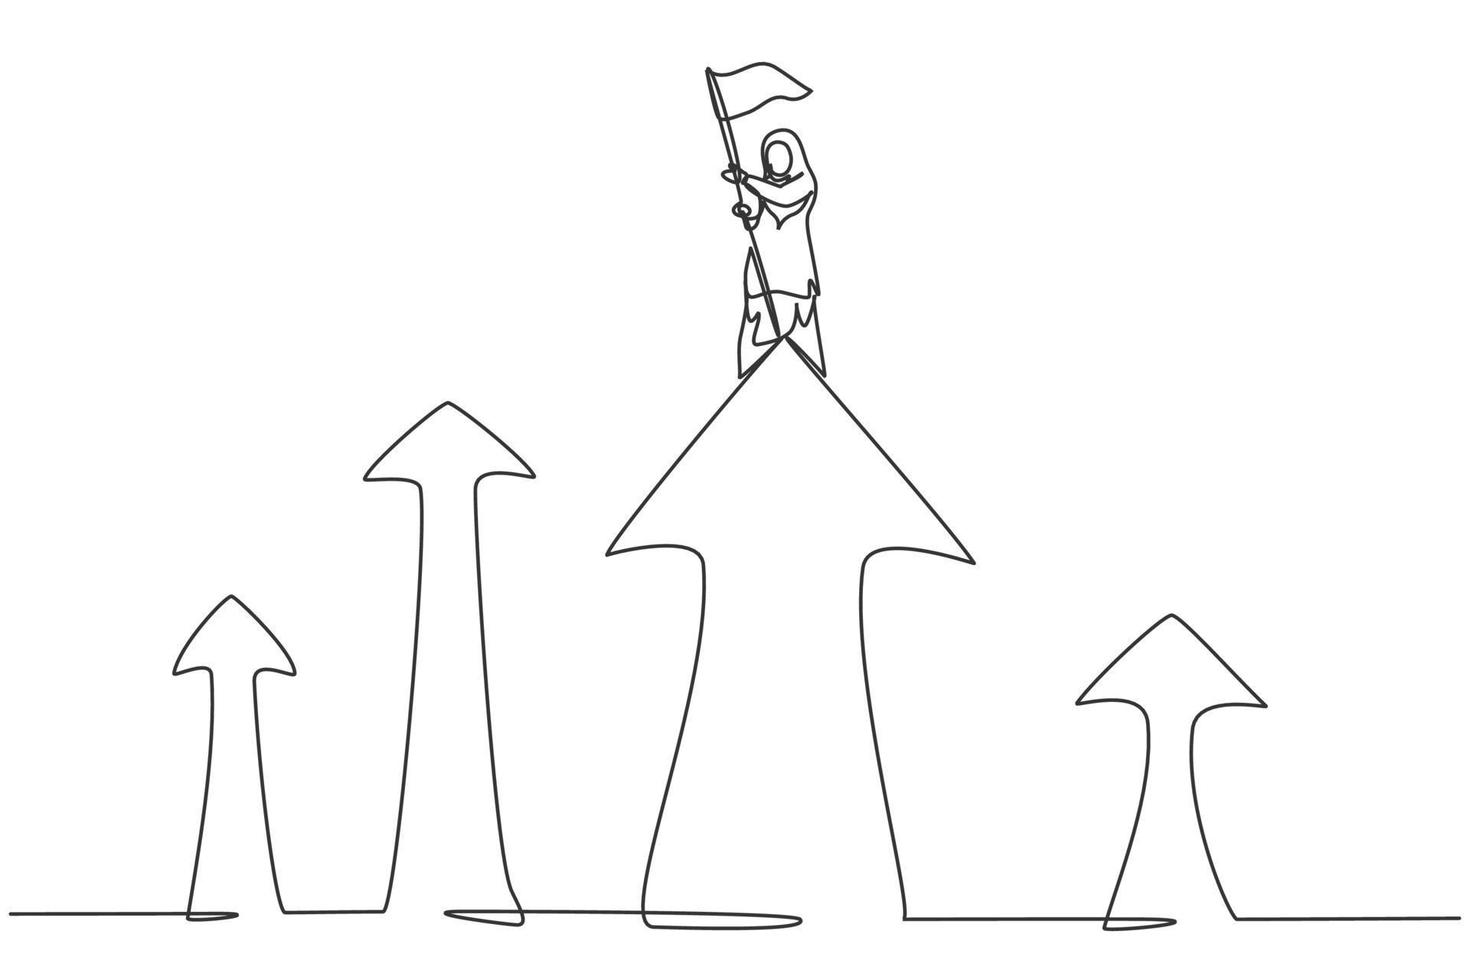 einzelne eine strichzeichnung junge arabische geschäftsfrau pflanzte flagge auf der spitze des pfeilsymbols. minimales Konzept für das finanzielle Wachstum des Unternehmens. moderne durchgehende Linie zeichnen Design-Grafik-Vektor-Illustration vektor